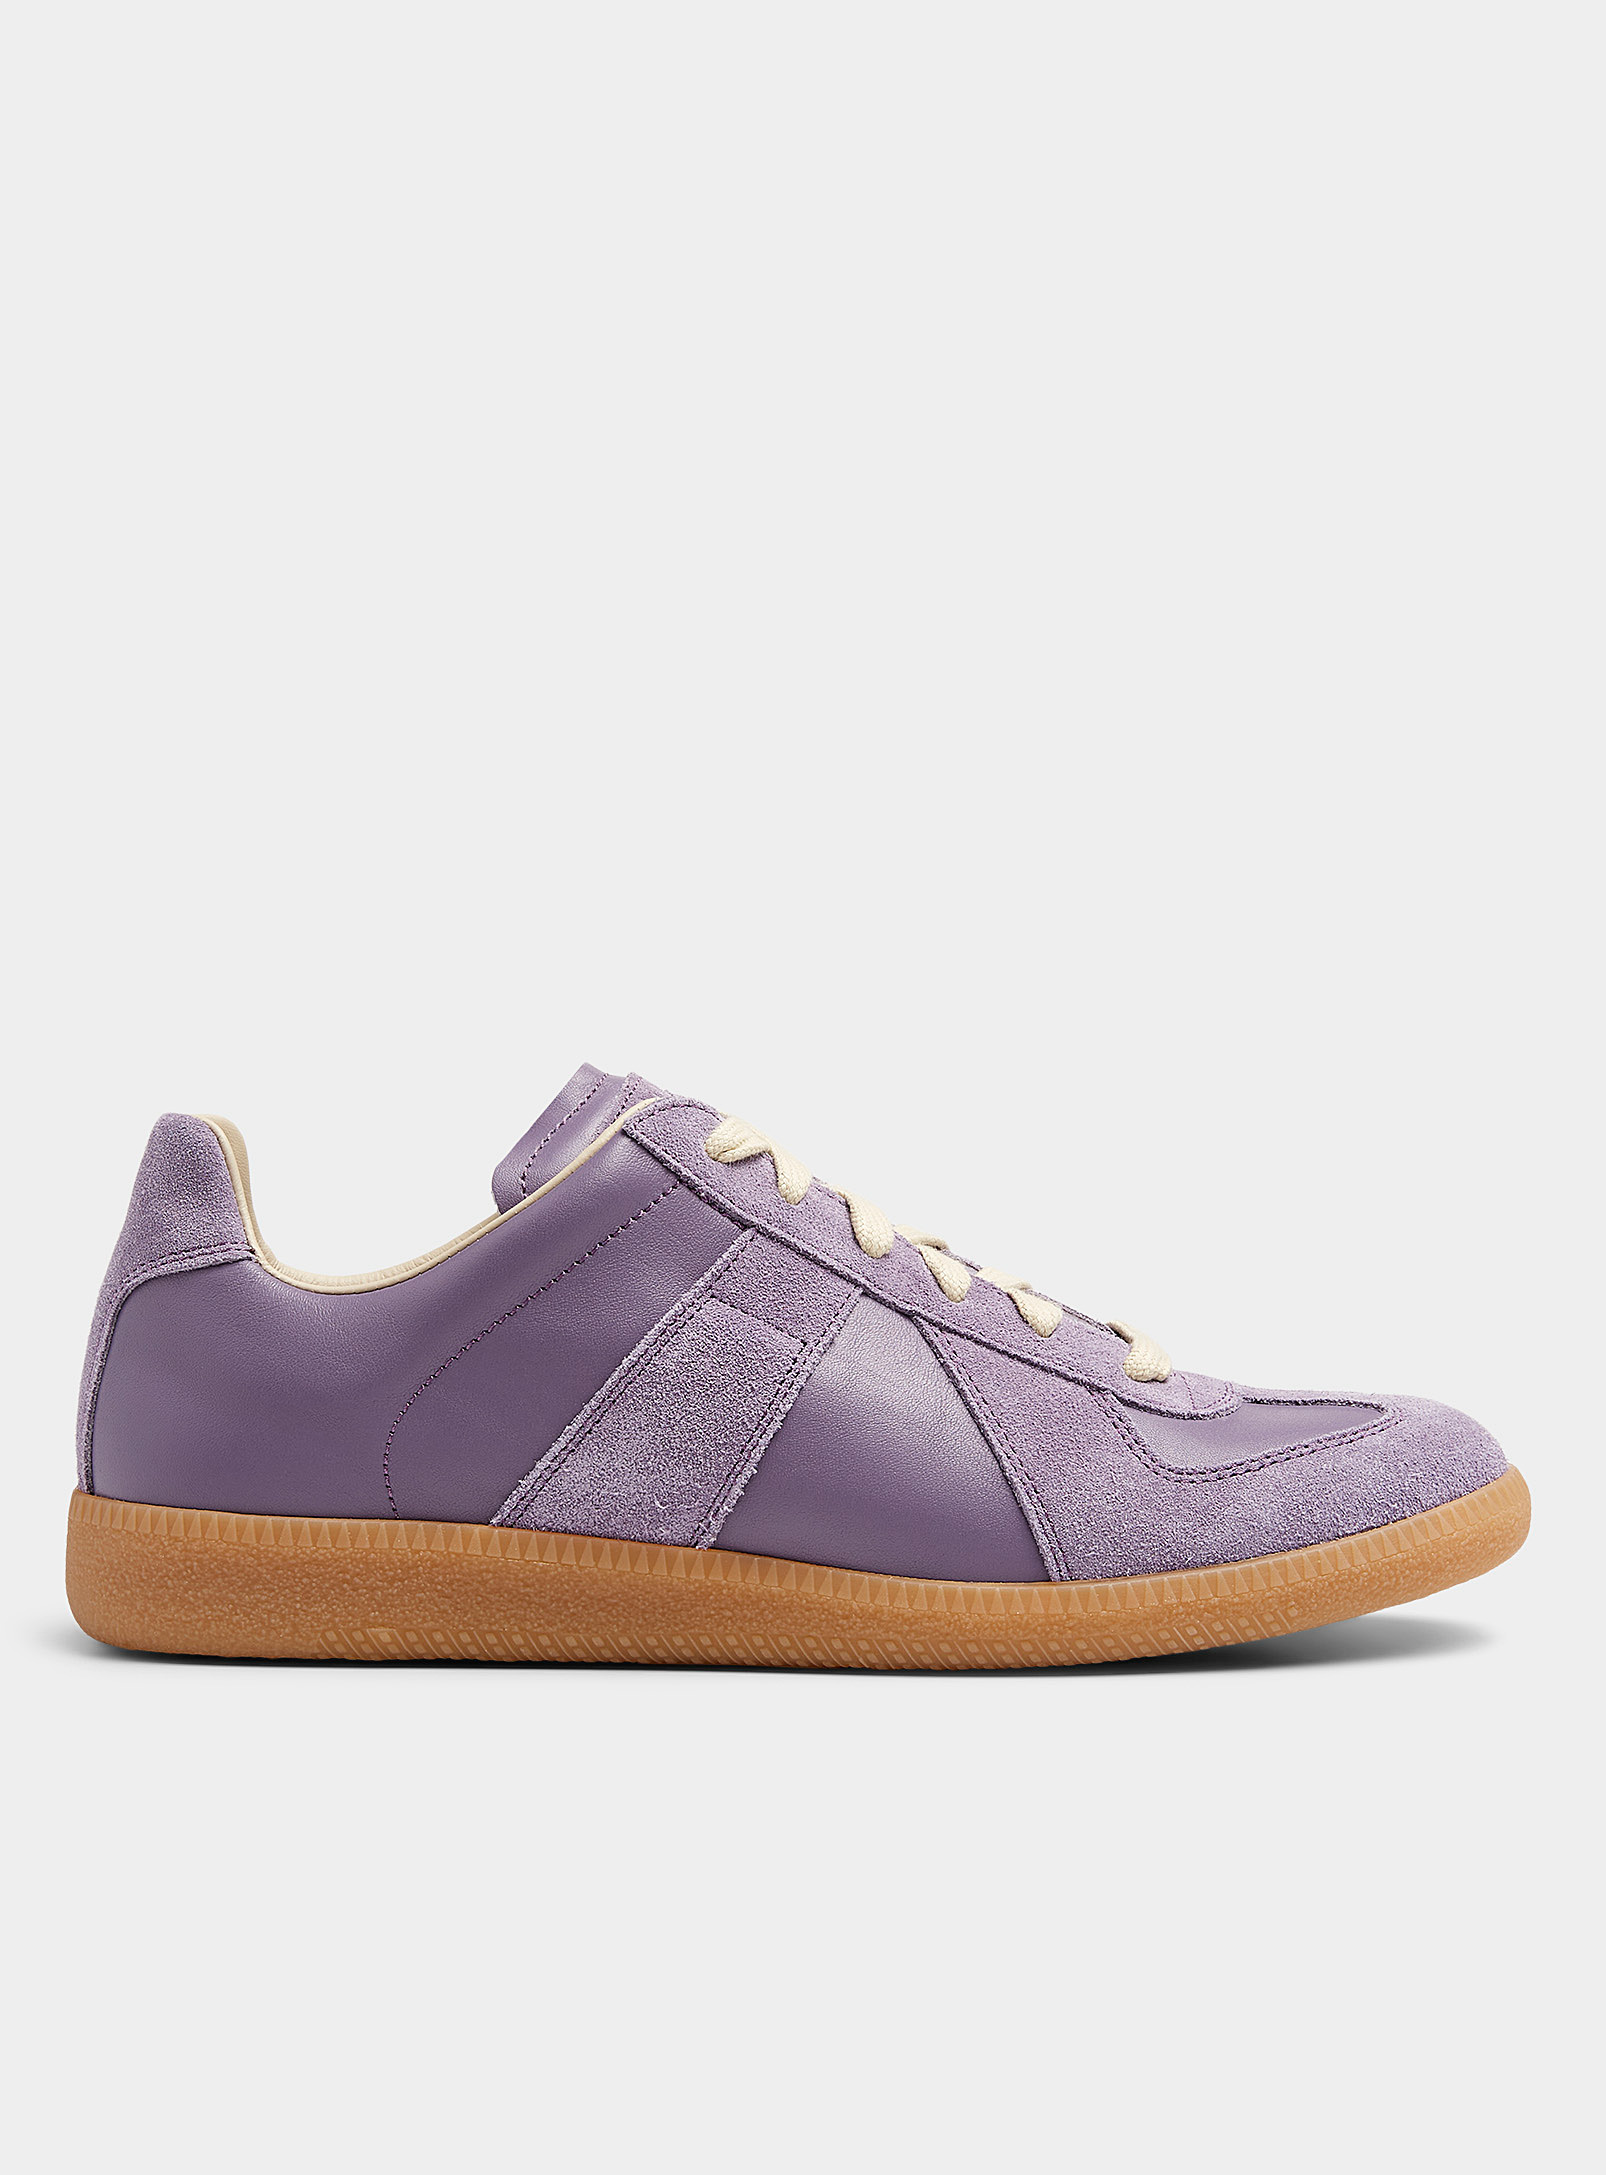 Maison Margiela Calfskin Replica Sneakers In Purple